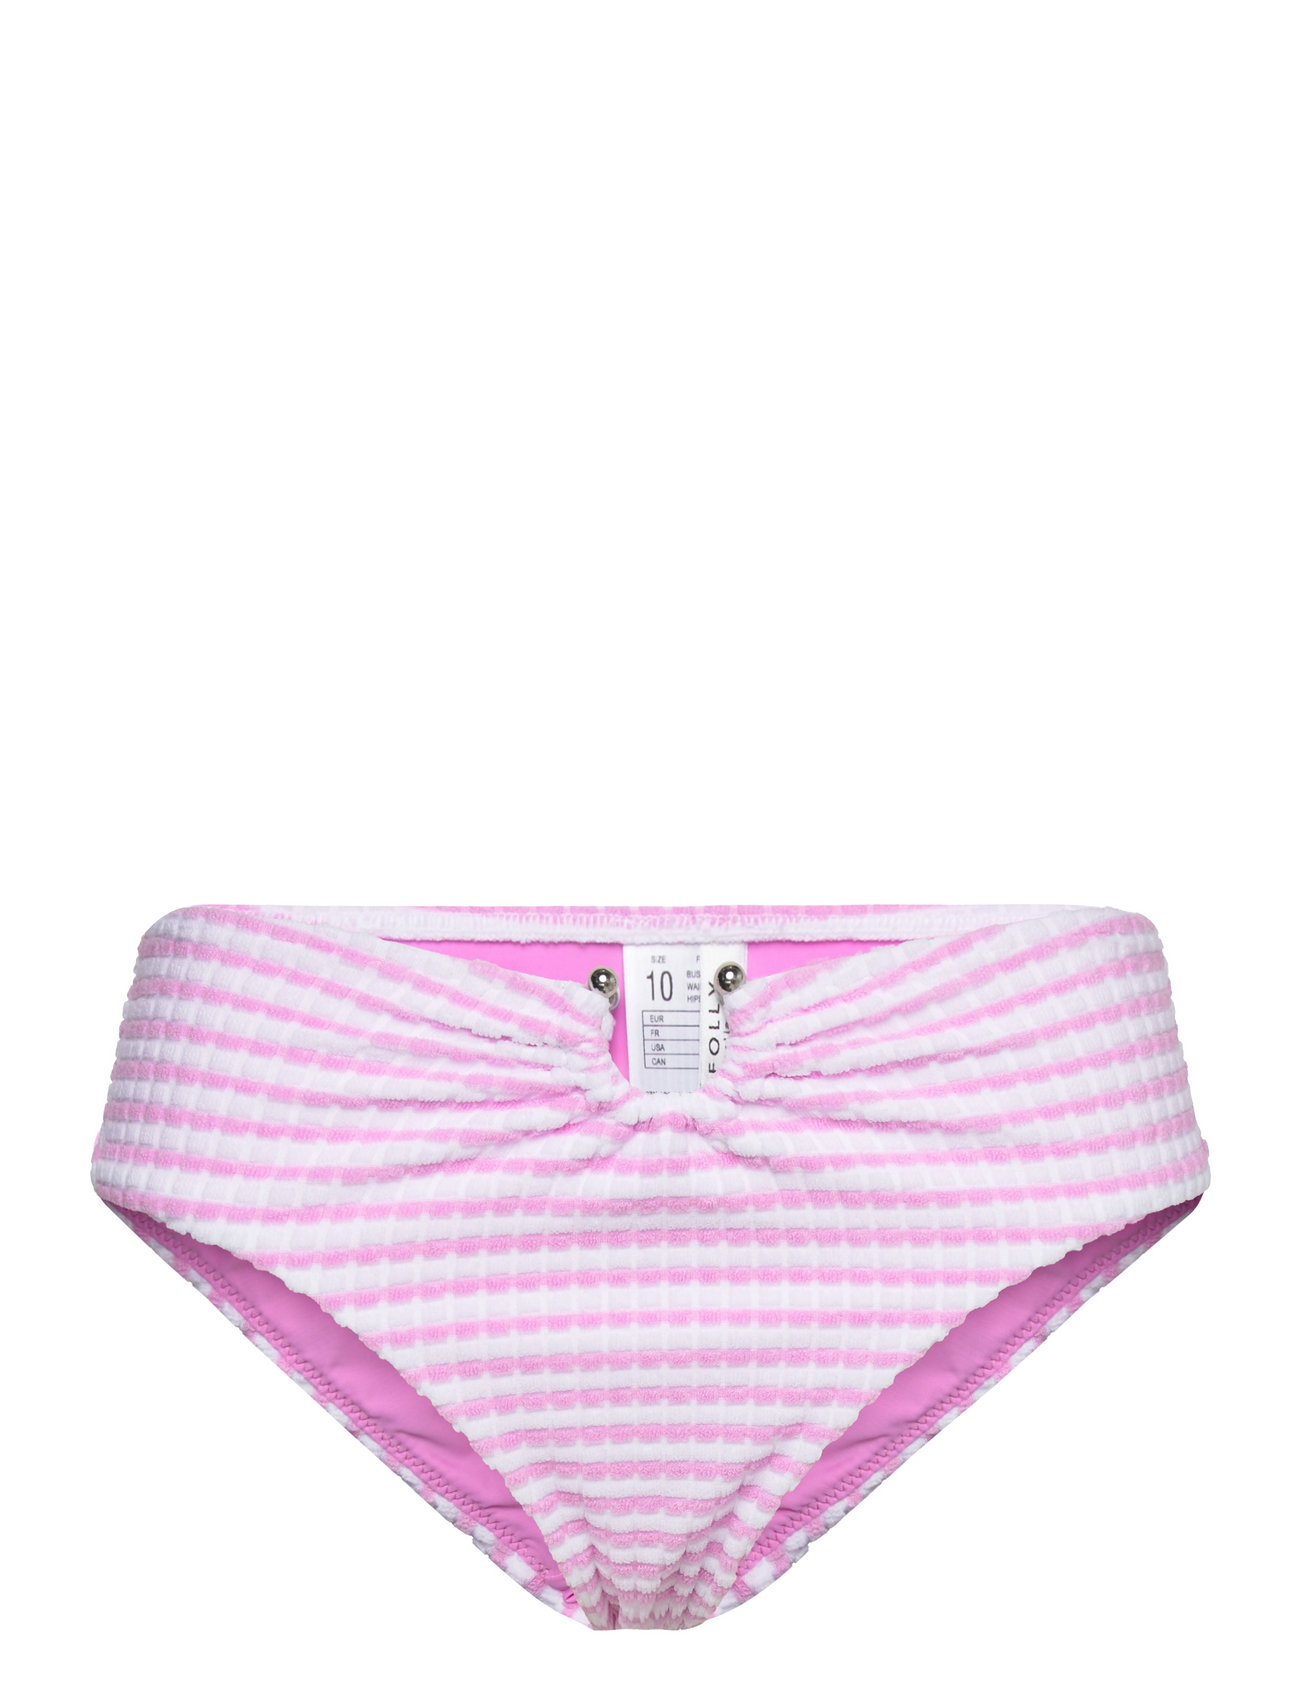 Sorrento Stripe High Rise Pant Swimwear Bikinis Bikini Bottoms High Waist Bikinis Pink Seafolly